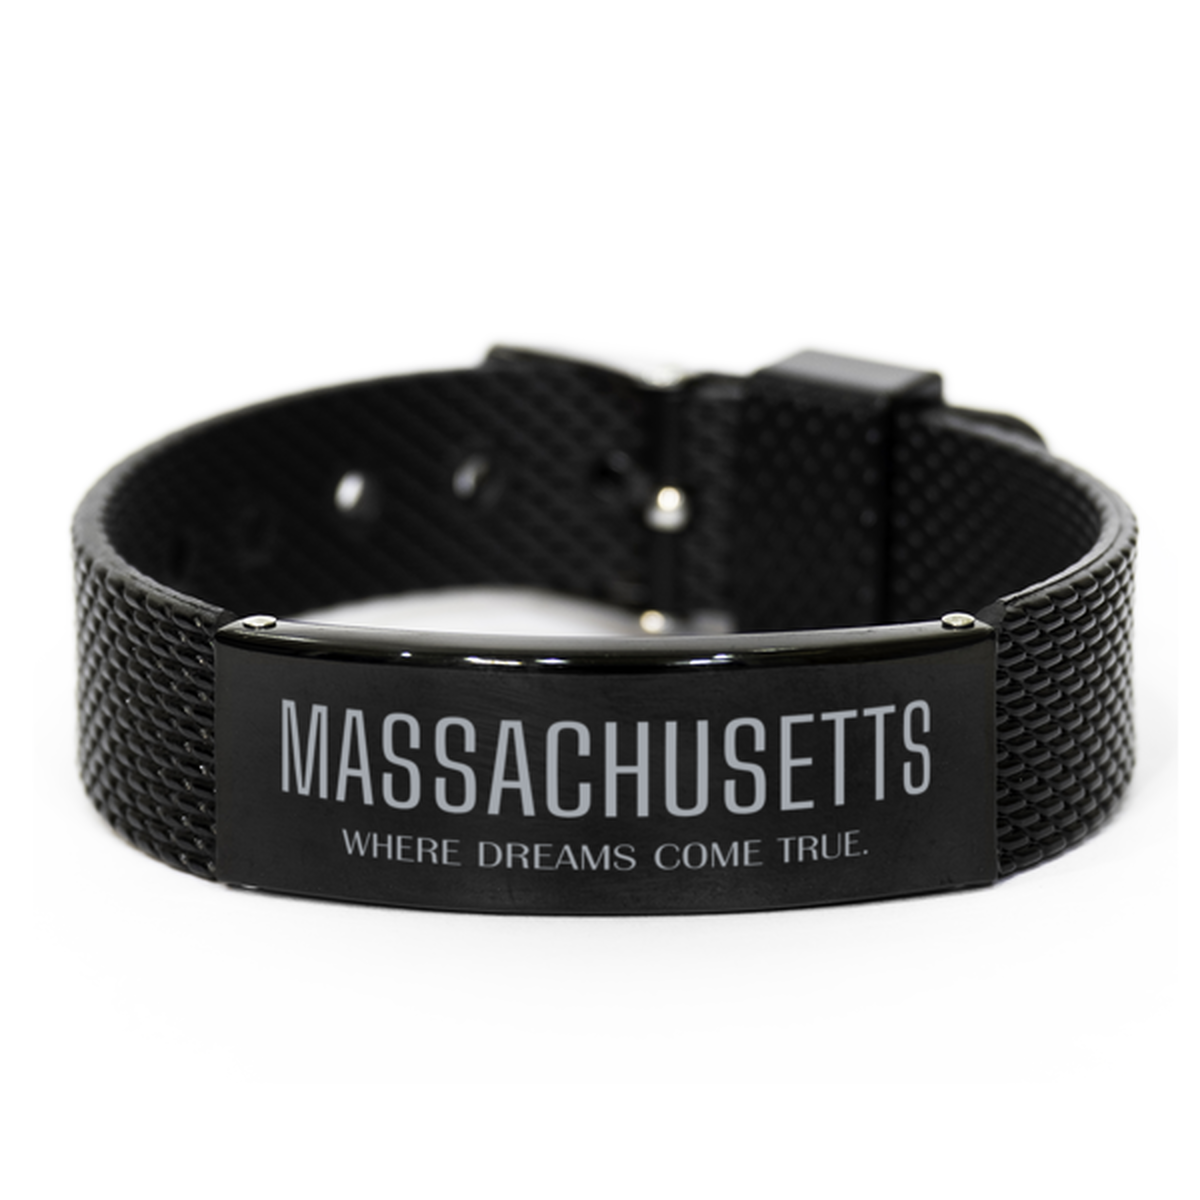 Love Massachusetts State Black Shark Mesh Bracelet, Massachusetts Where dreams come true, Birthday Inspirational Gifts For Massachusetts Men, Women, Friends